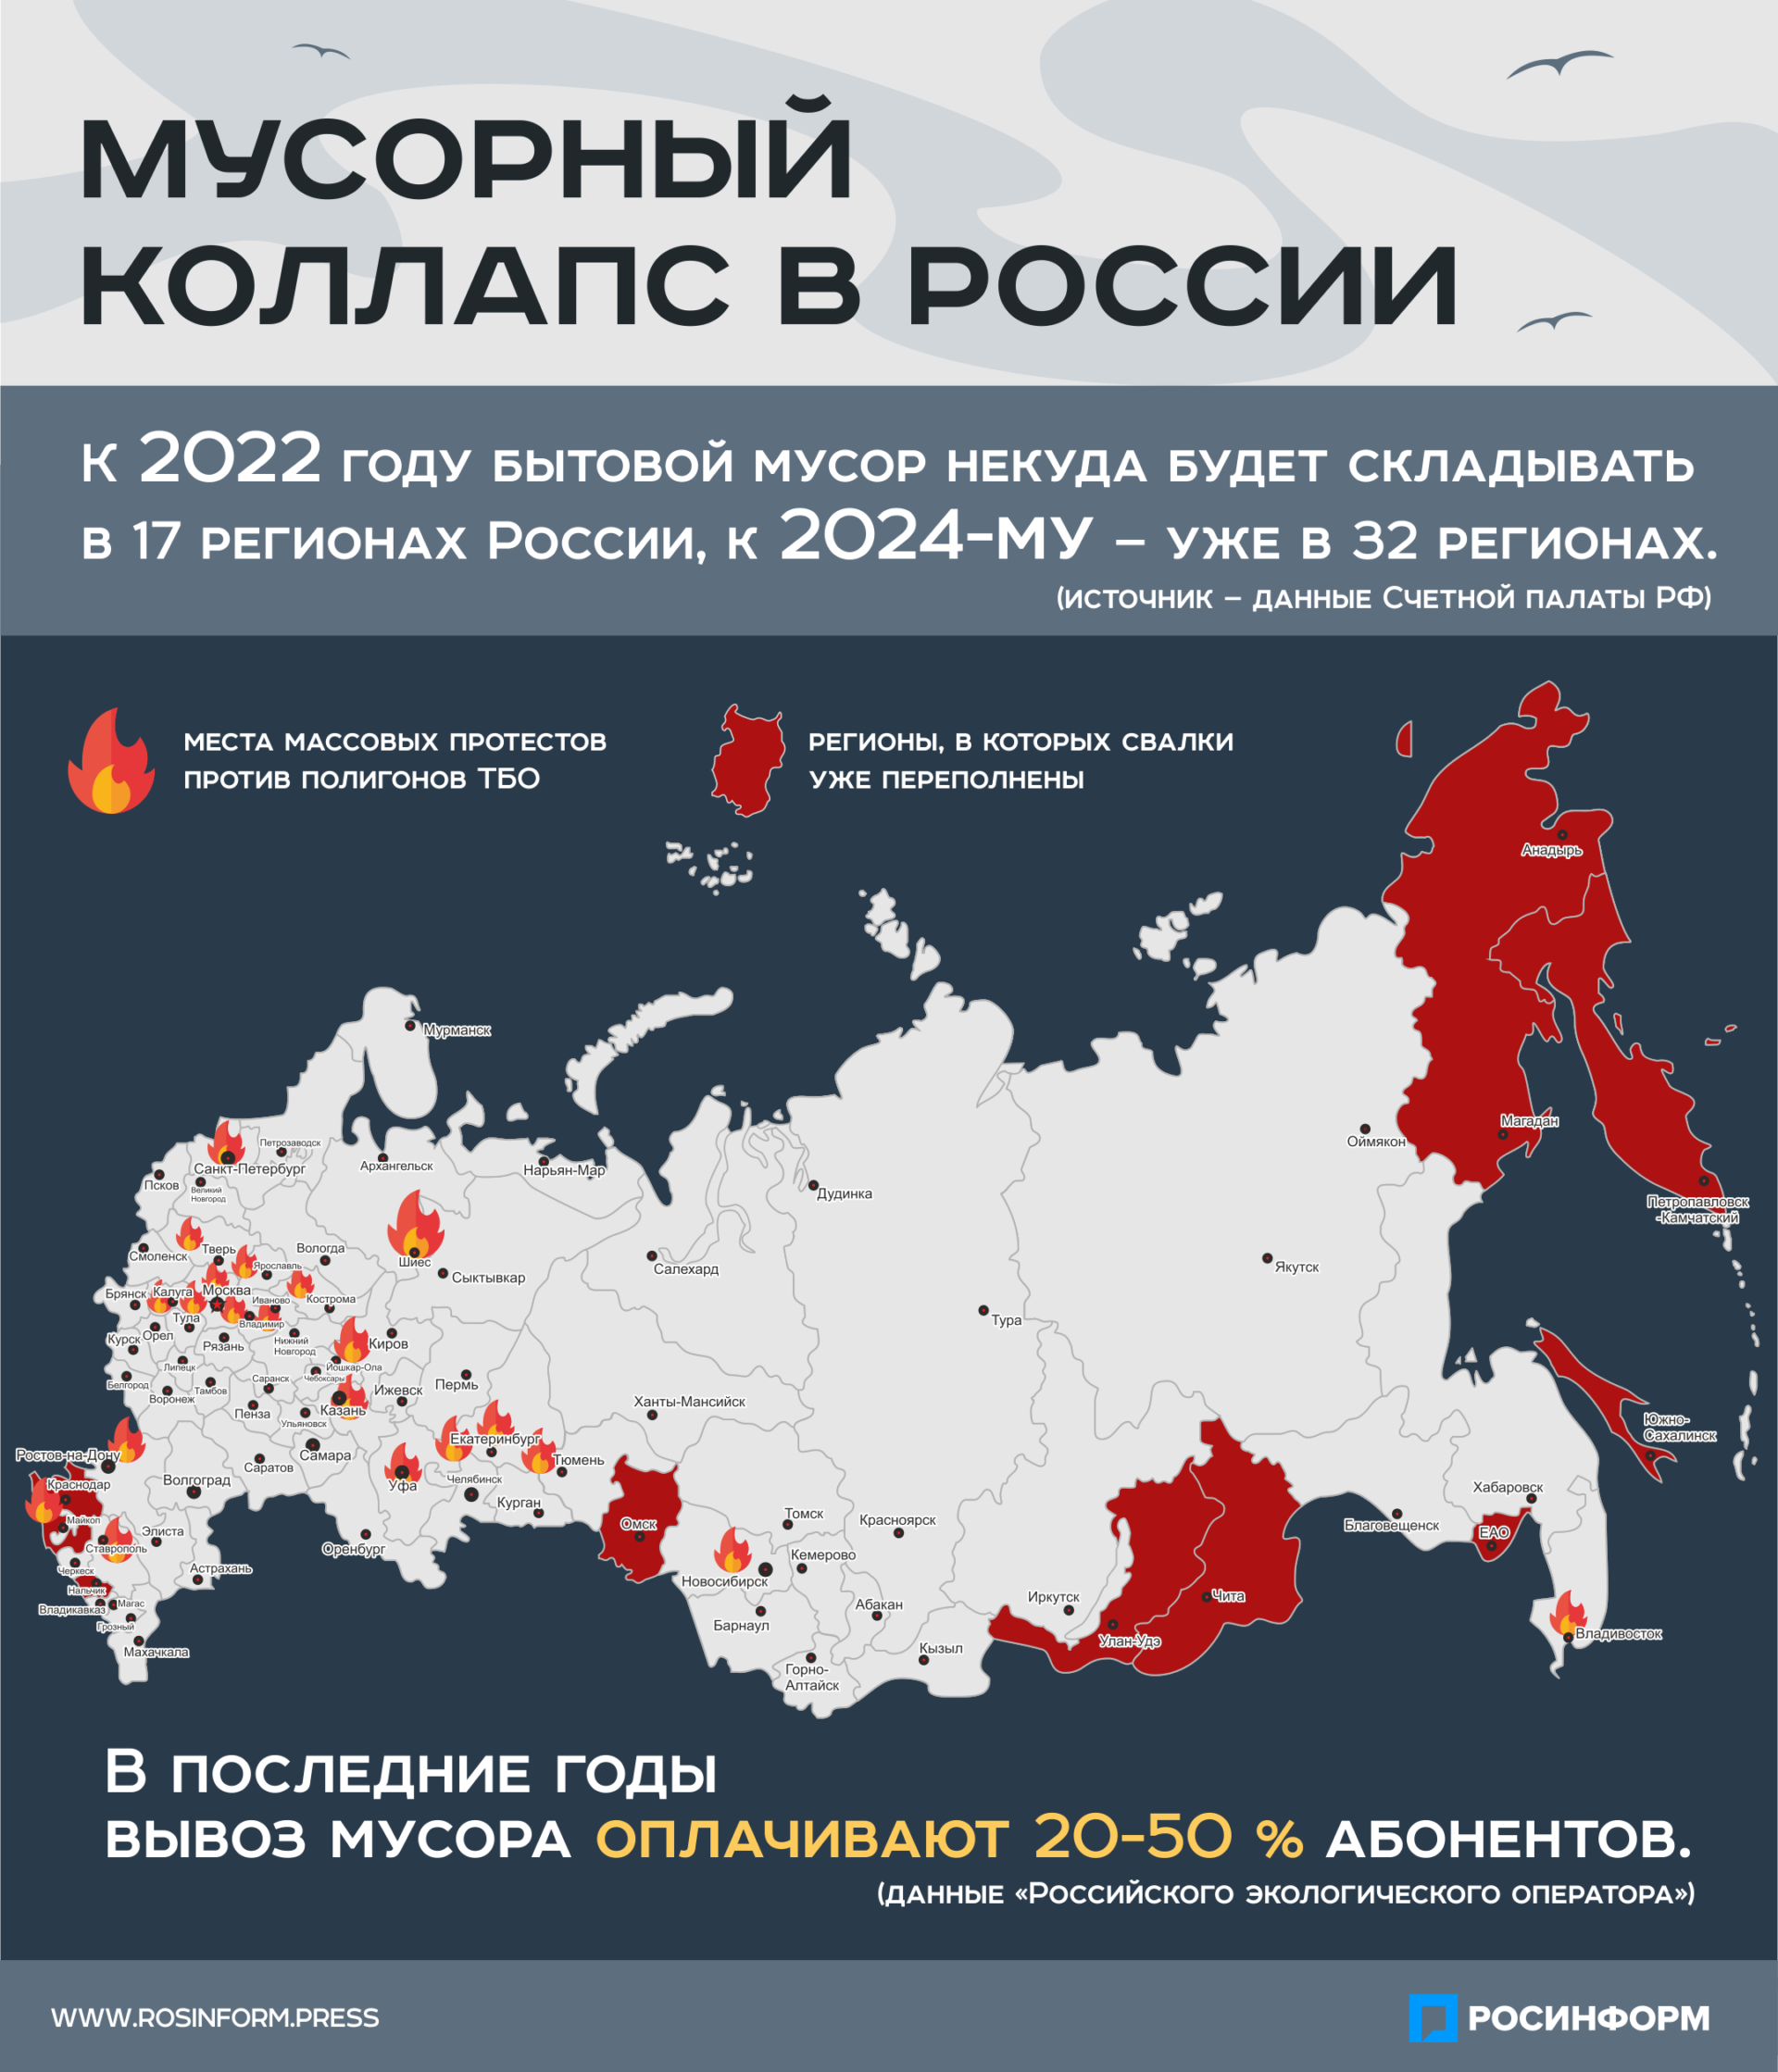 Все горячие точки россии. Горячие точки России. Горячие точки России на карте. Горячие точки на карте. Горячие точки в России 2022 года.